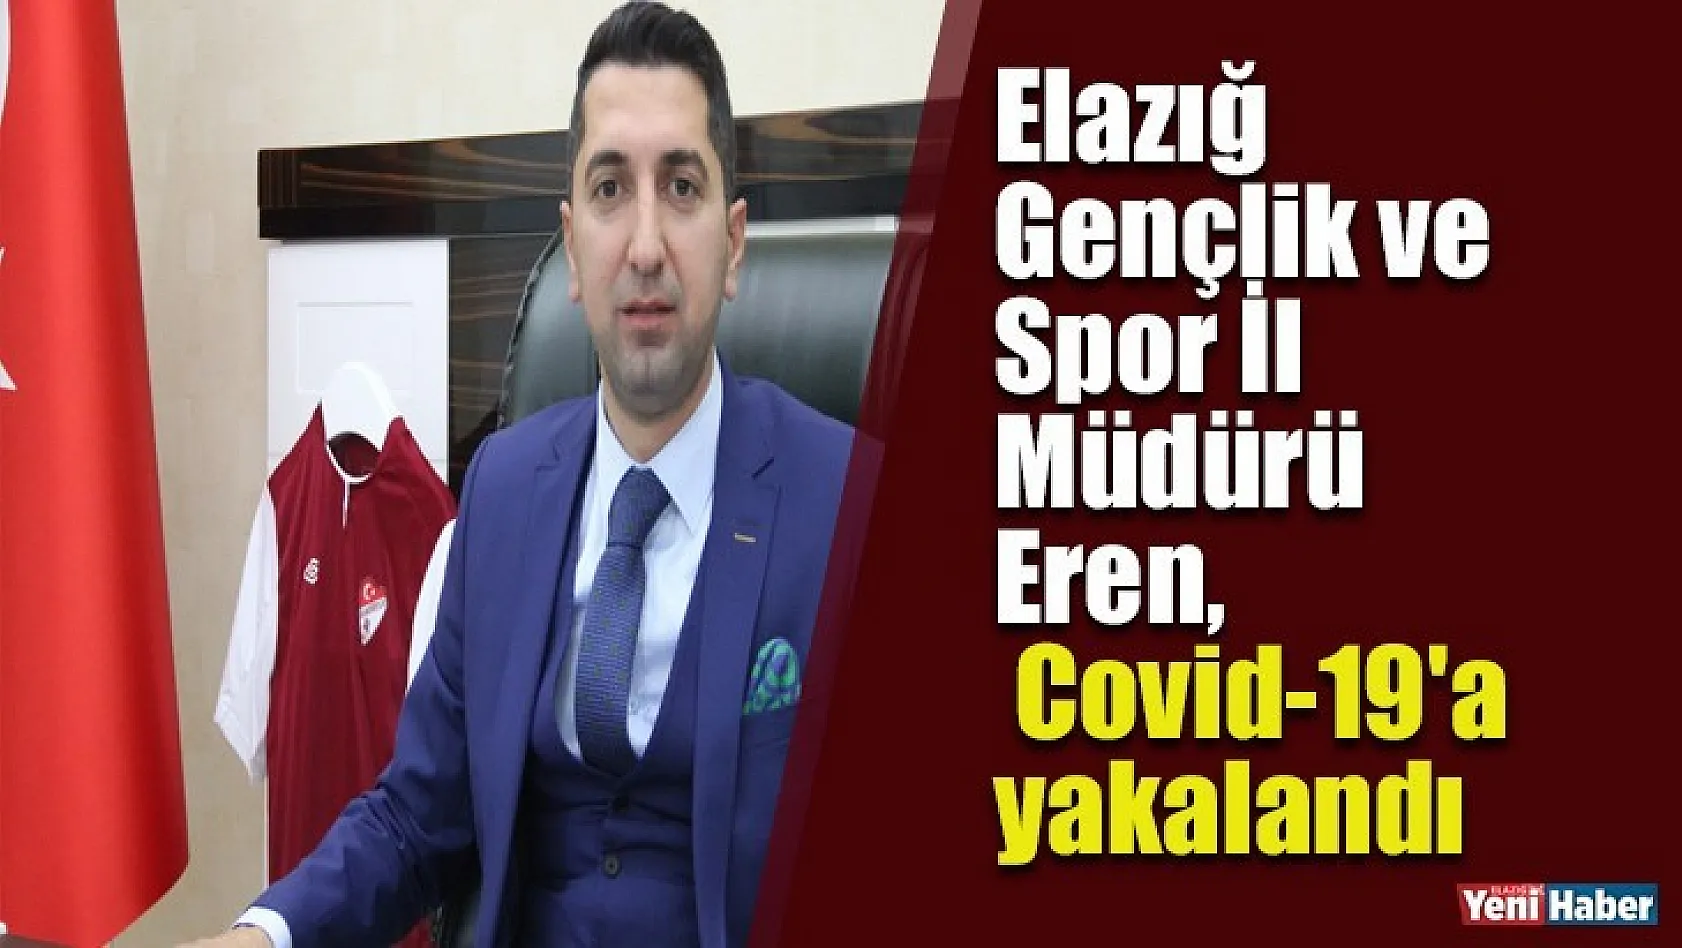 Elazığ Gençlik ve Spor İl Müdürü Eren, Covid-19'a Yakalandı!